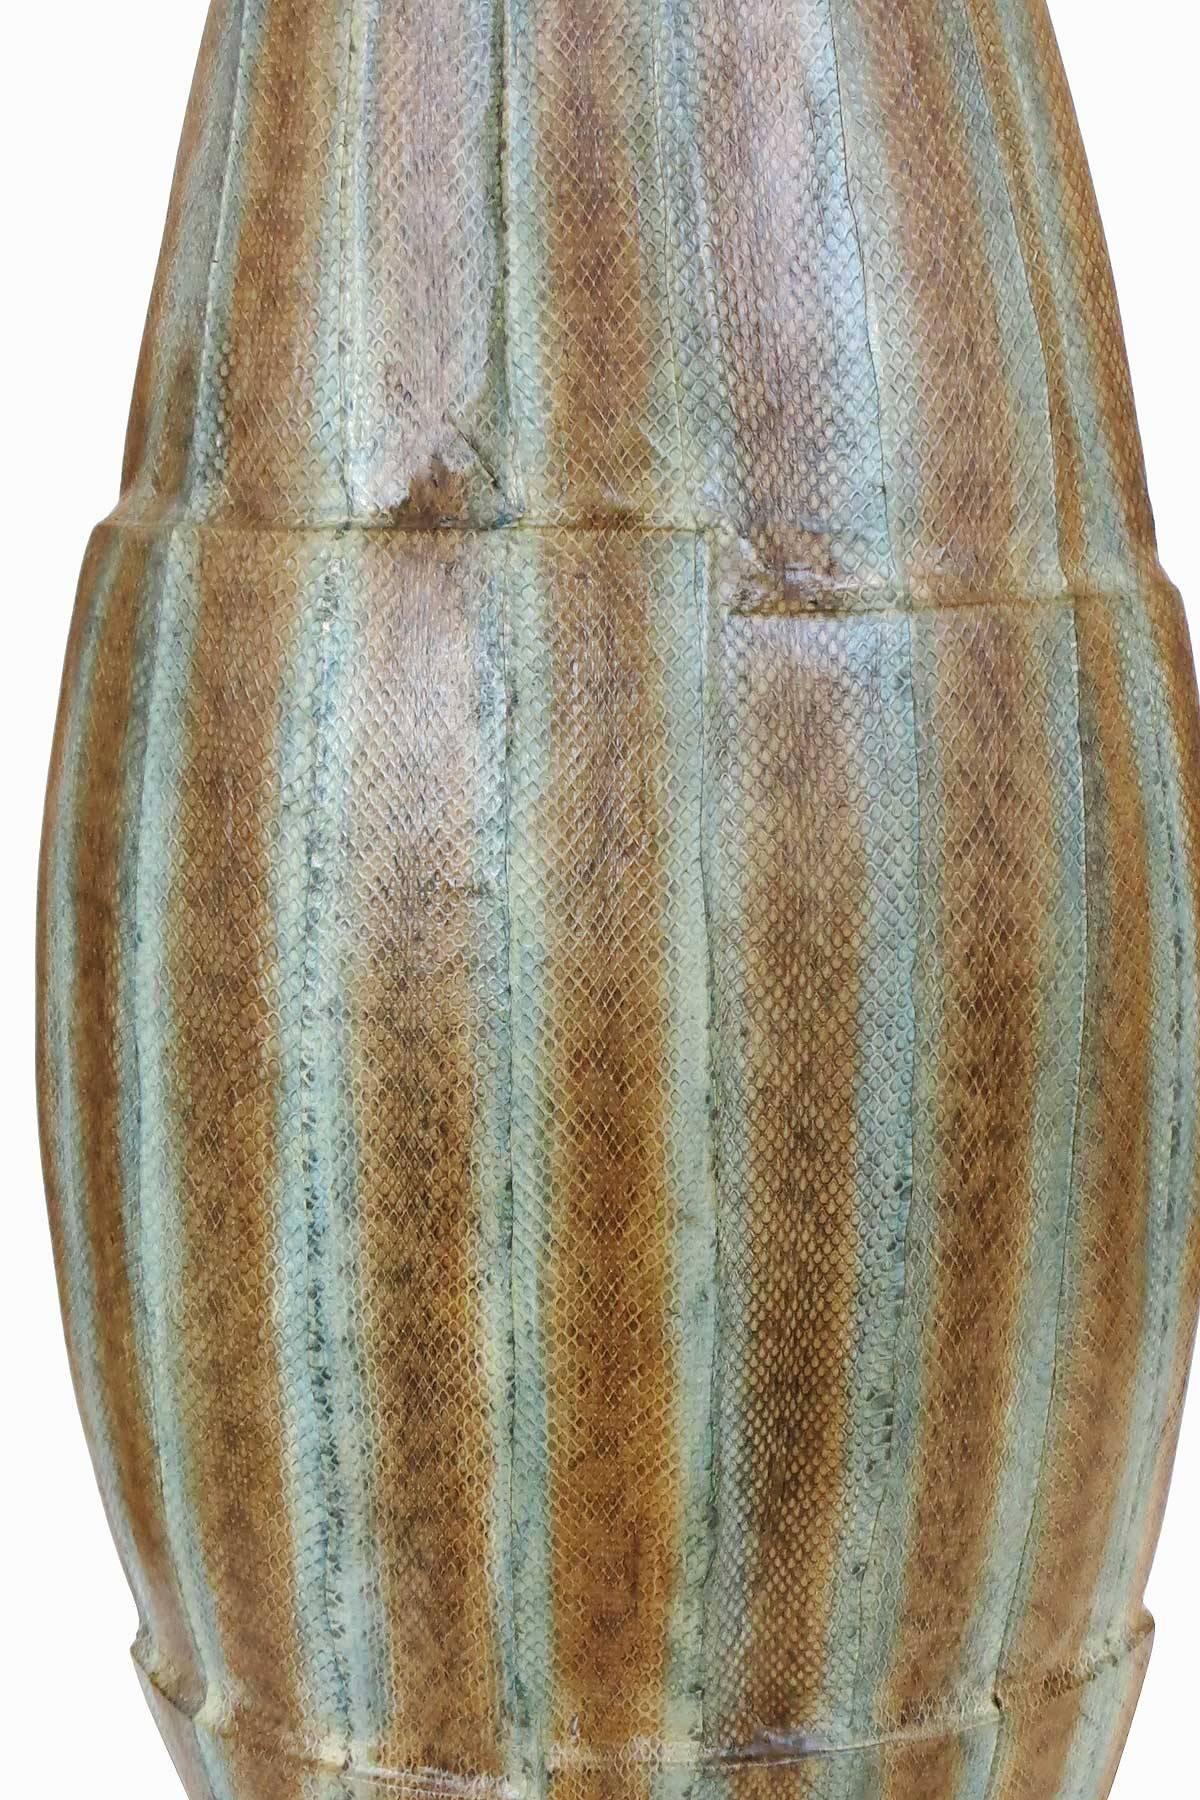 Animal Skin Asymmetrical Snake Skin Wrapped Resin Vase